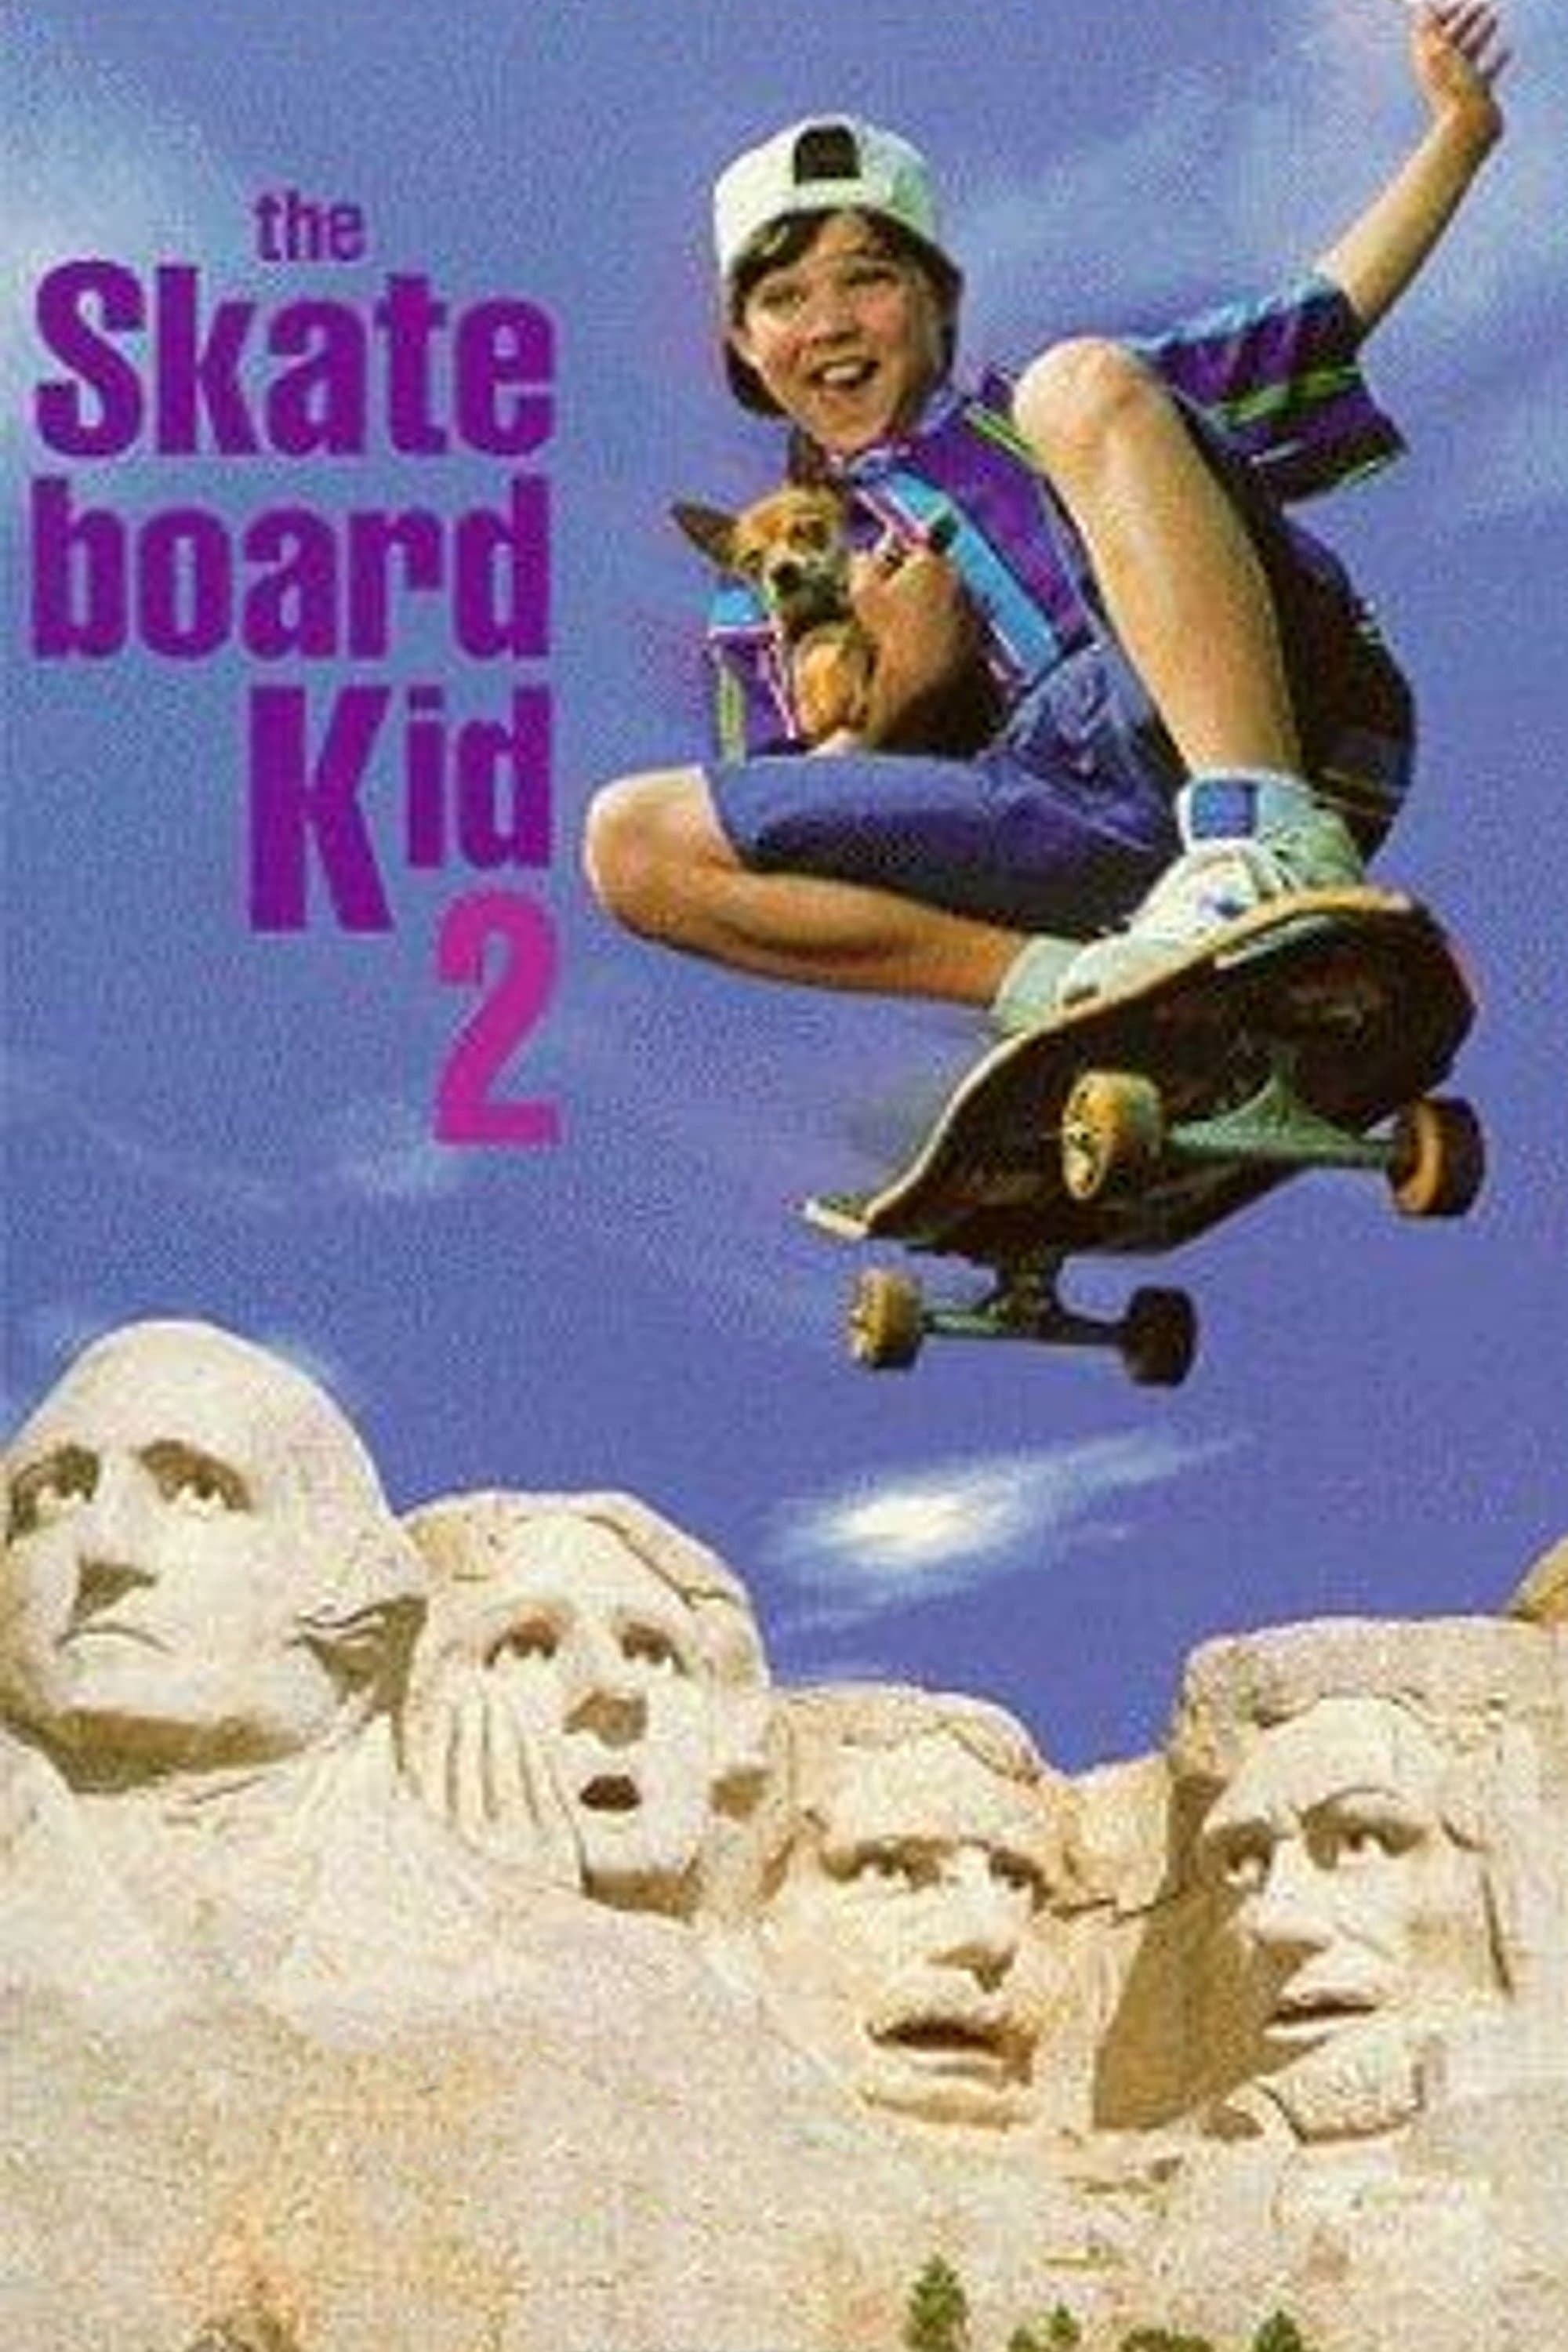 The Skateboard Kid II (1995)